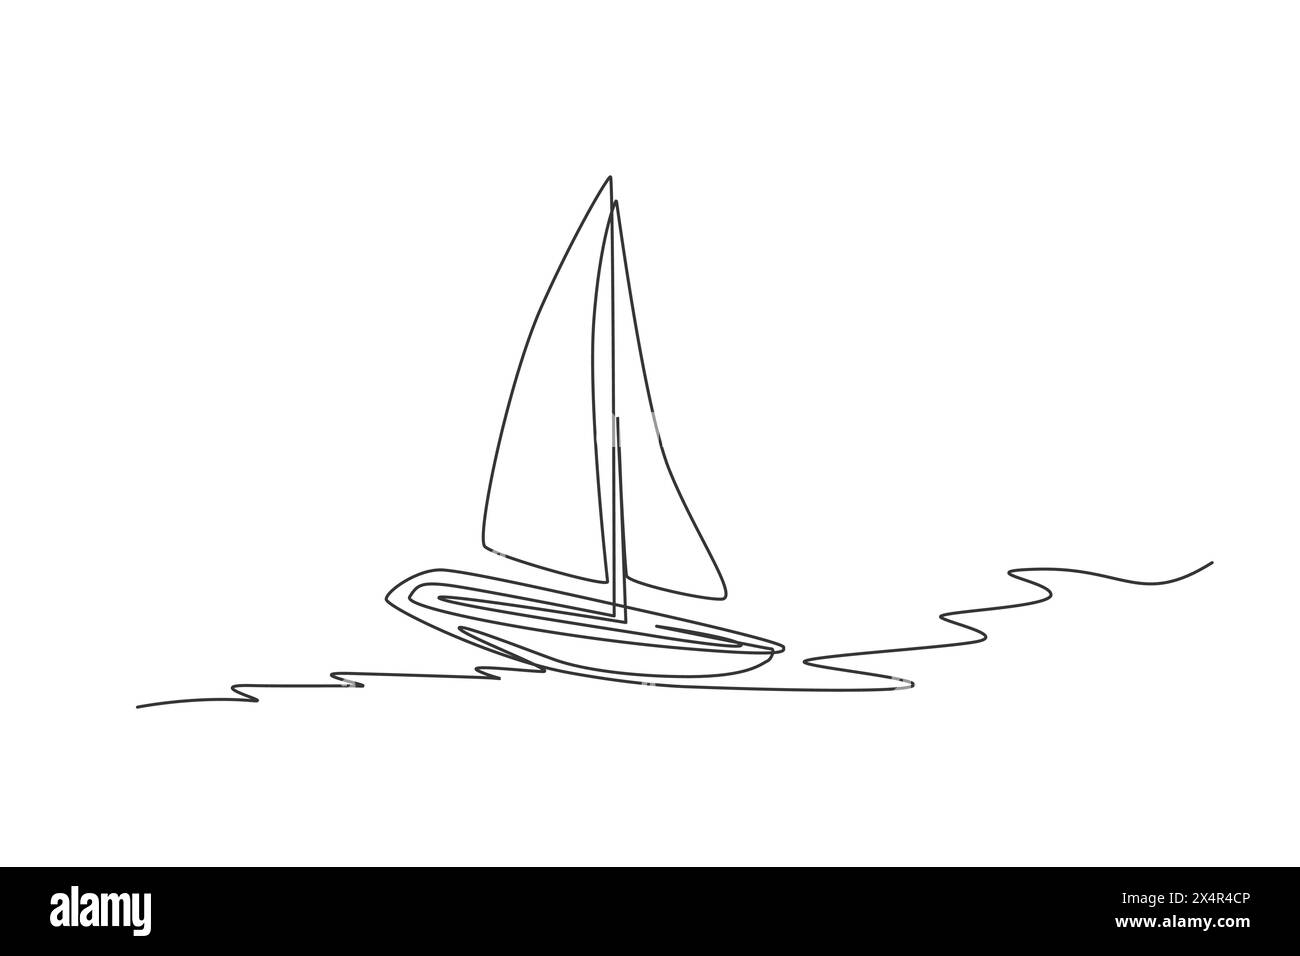 Eine durchgehende Linienzeichnung von Segelbooten, die auf dem Meer segeln. Fahrzeugkonzept für den Wassertransport. Dynamisches einzeiliges Zeichnen-Design grafisches Vektorillu Stock Vektor